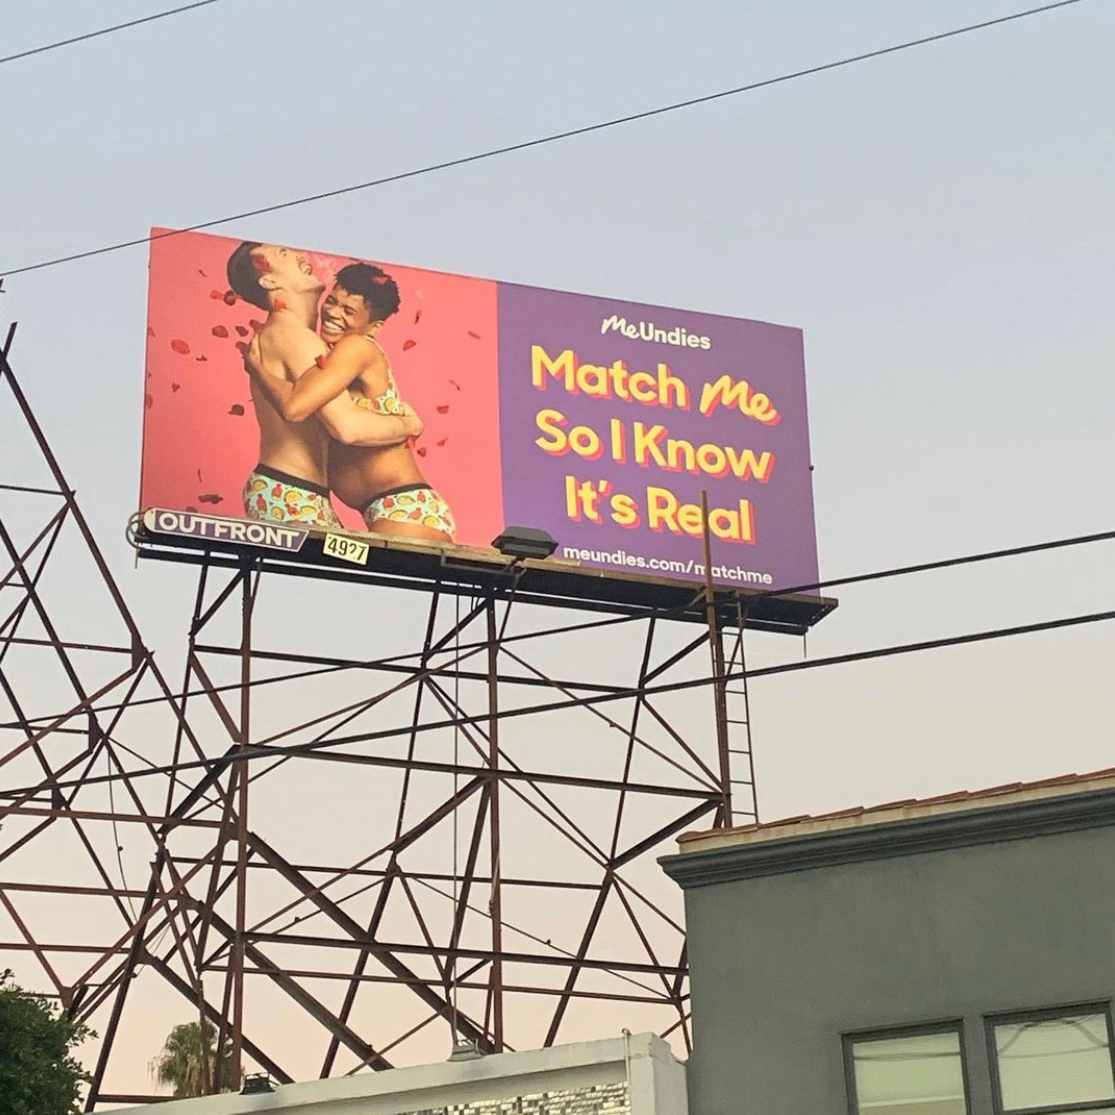 meundies-billboard-match-me-2